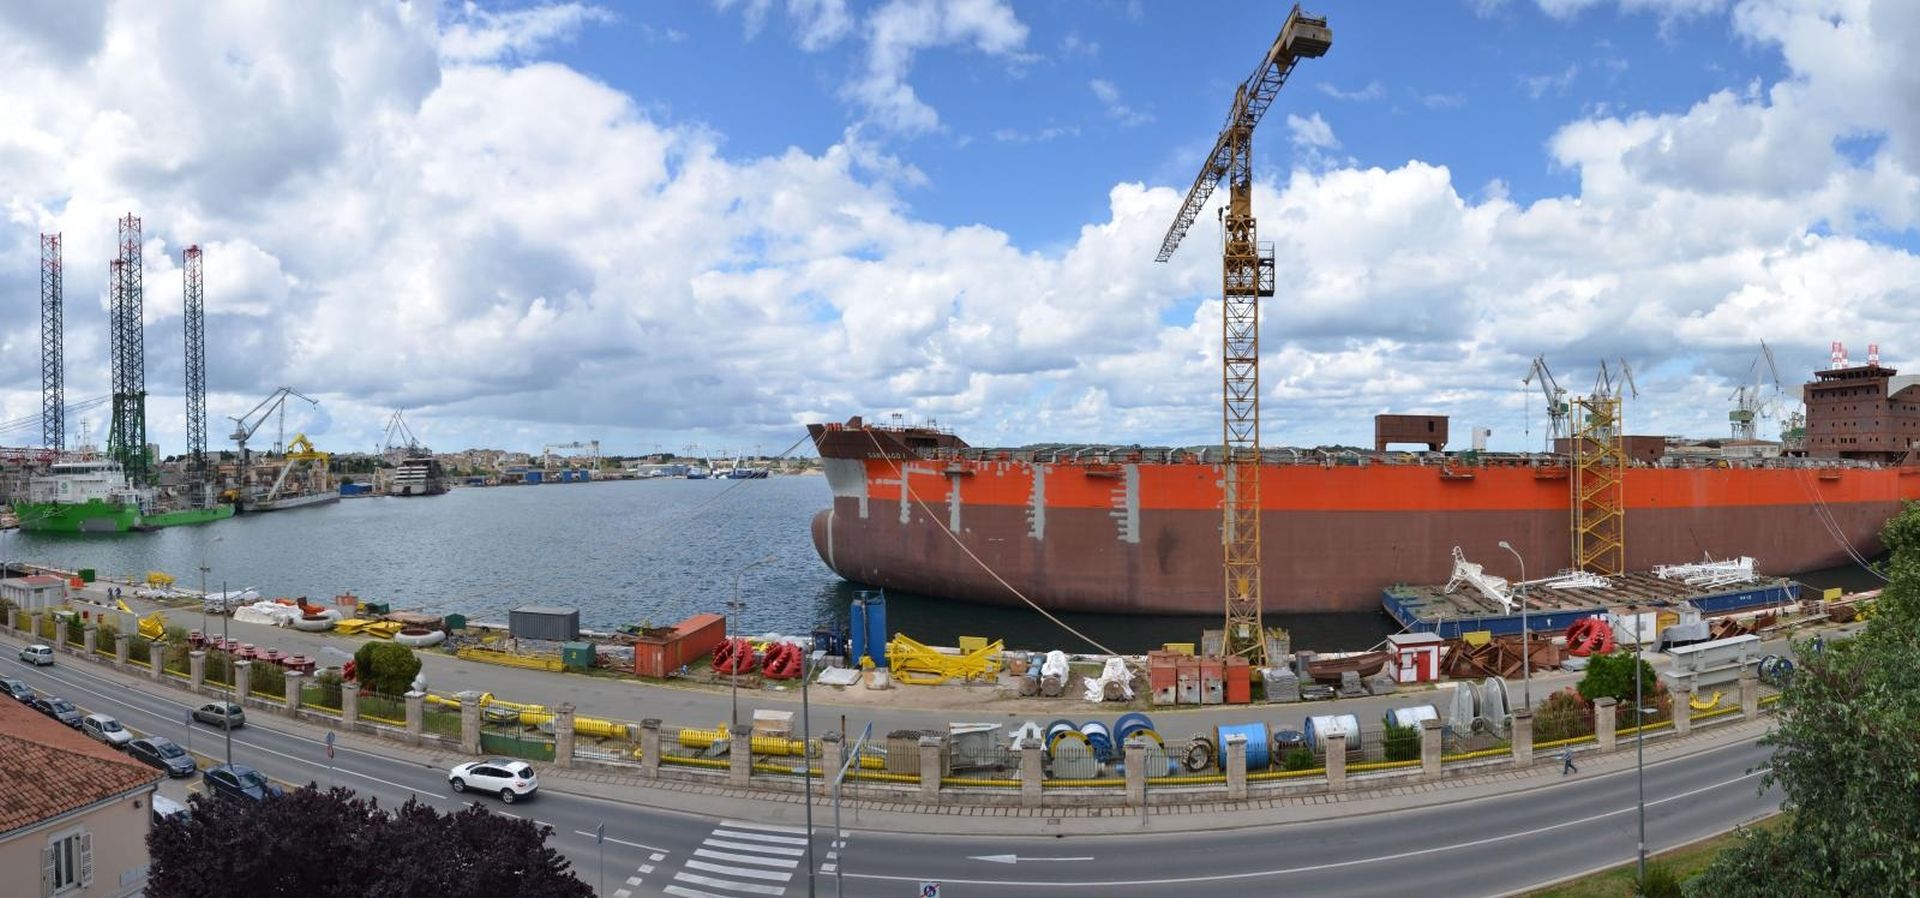 15.05.2018., Pula - Panoramski pogled na operativnu obalu brodogradilista Uljanik na kojoj se nalaze brodovi na opremanju i gradnji. Photo: Dusko Marusic/PIXSELL